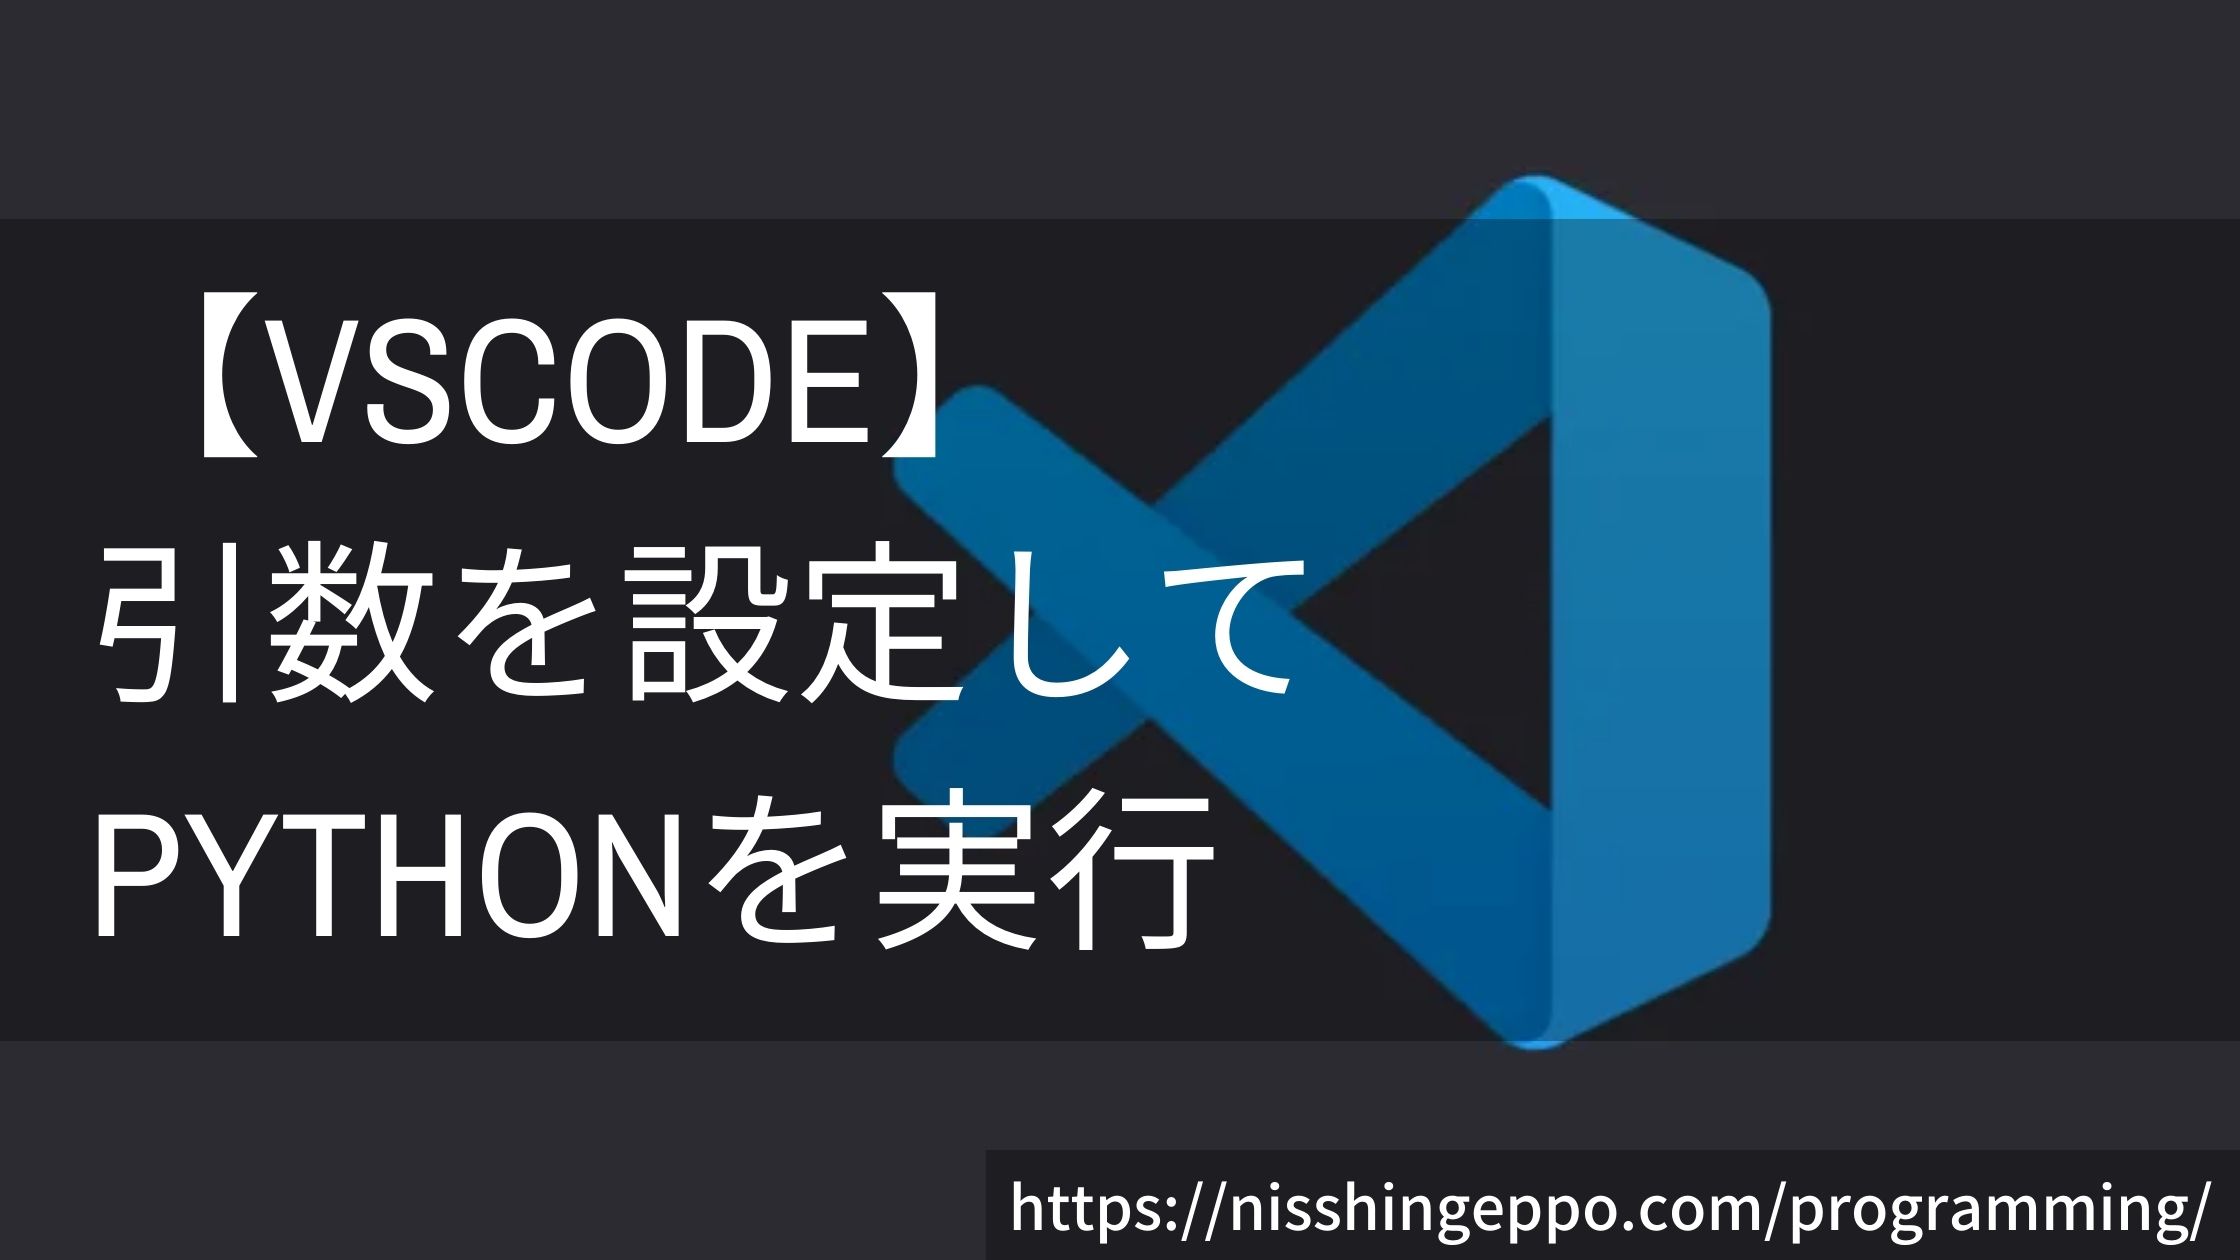 【VScode】引数を設定してpythonのコードをデバッグする方法